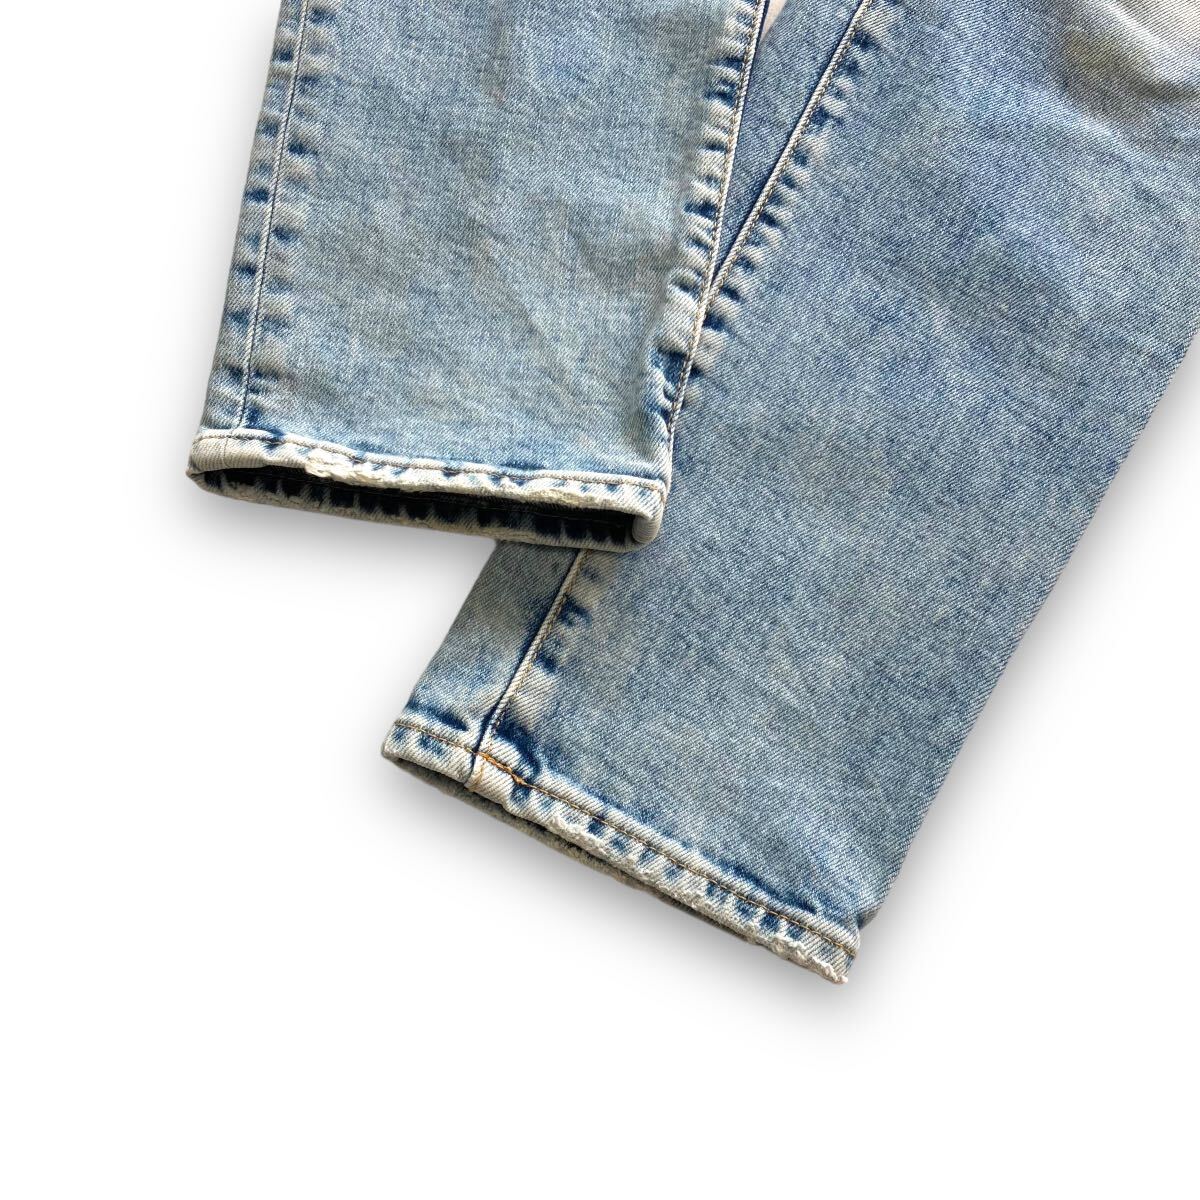 [DSQUARED2] Dsquared Italy made damage Denim pants skinny jeans ske-ta- jeans SKATER JEAN black tag 1964 (48)